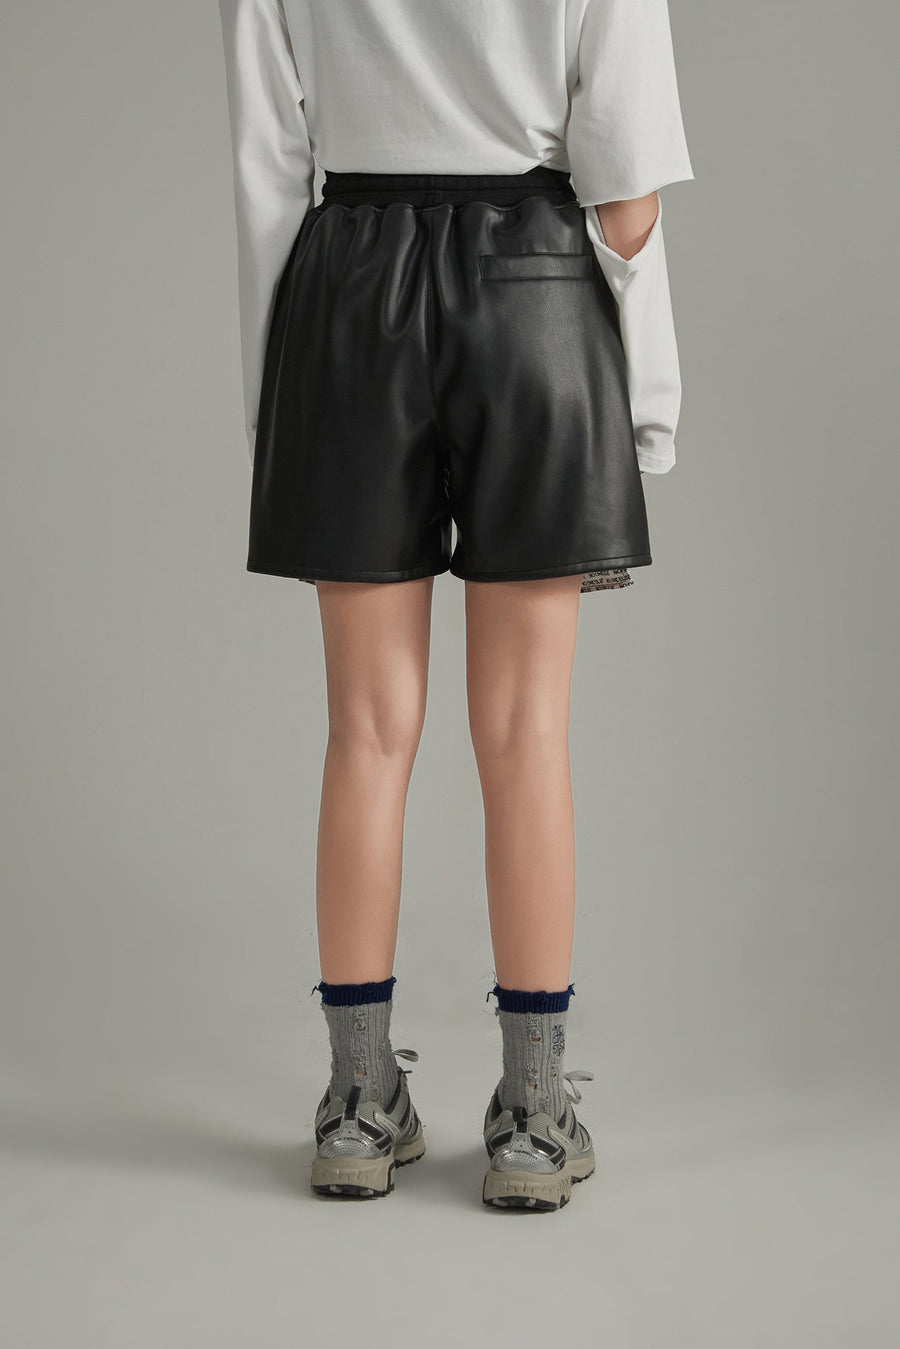 CHUU Leather Exposed Pocket Lining Shorts